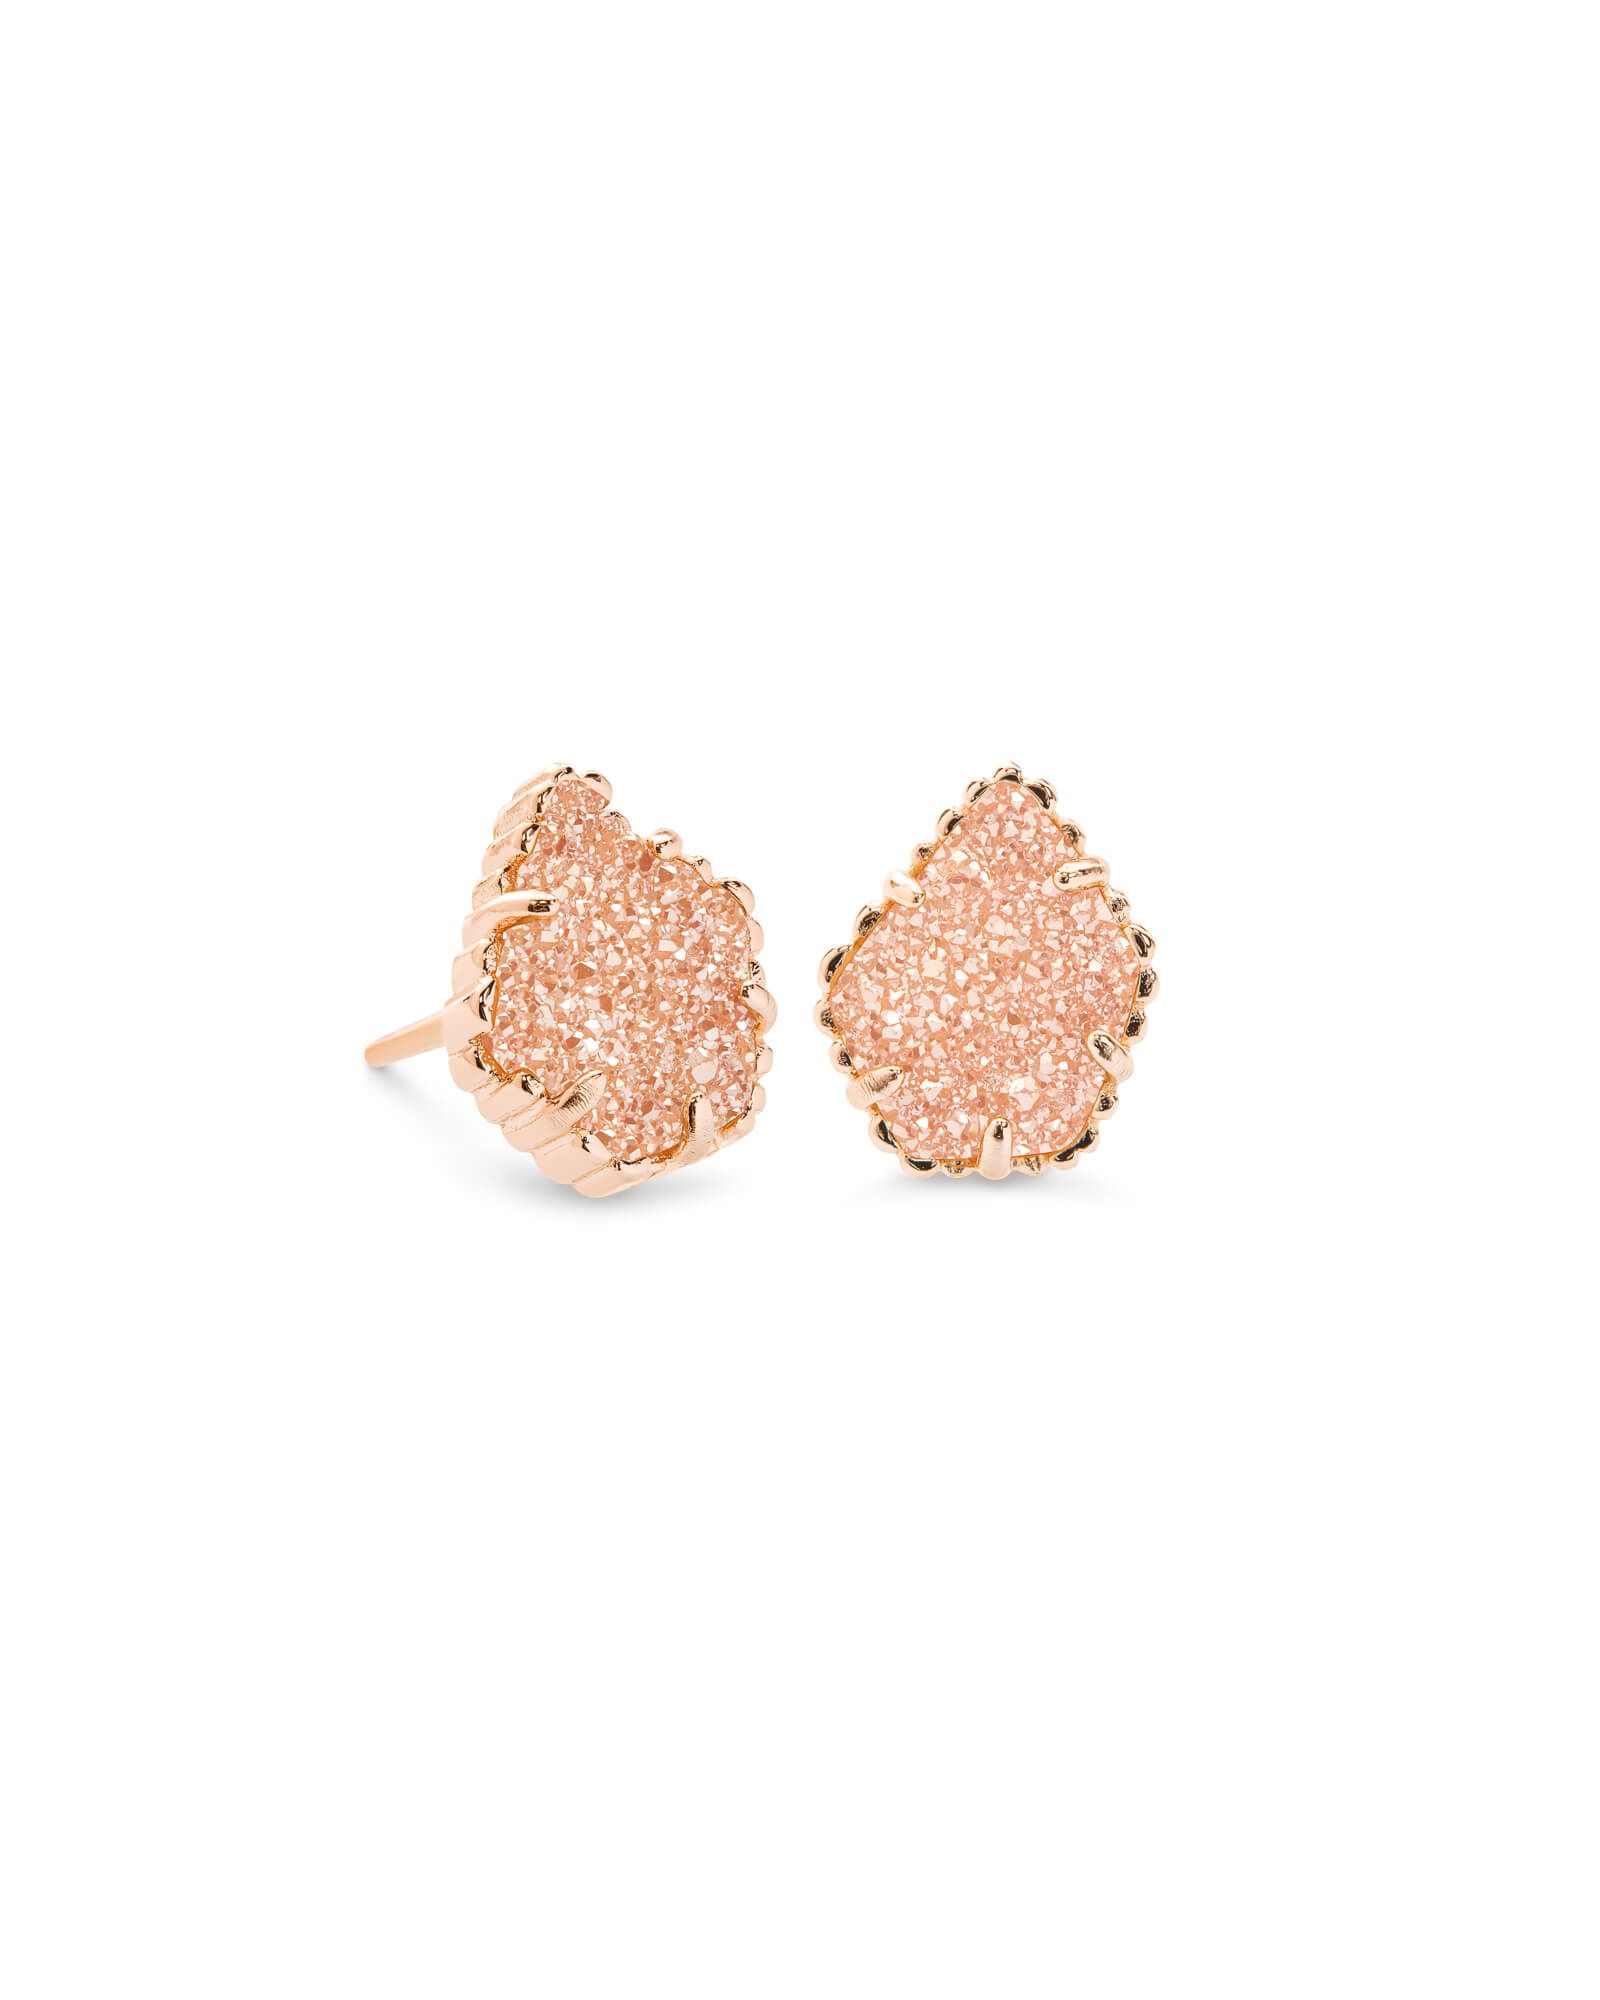 Tessa Rose Gold Stud Earrings in Sand Drusy | Kendra Scott | Kendra Scott